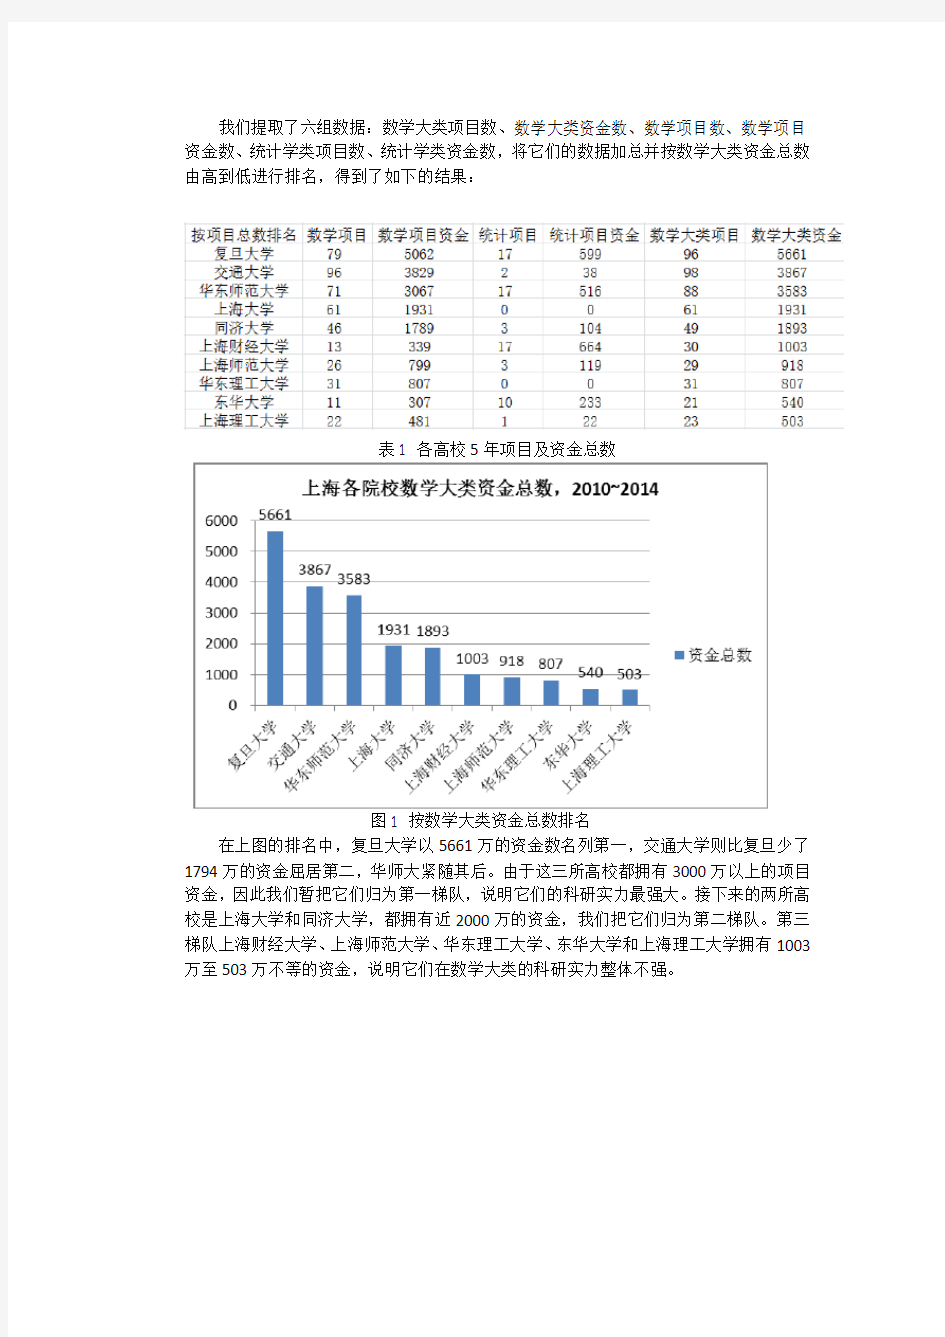 上海十所高校数学统计类科研实力分析